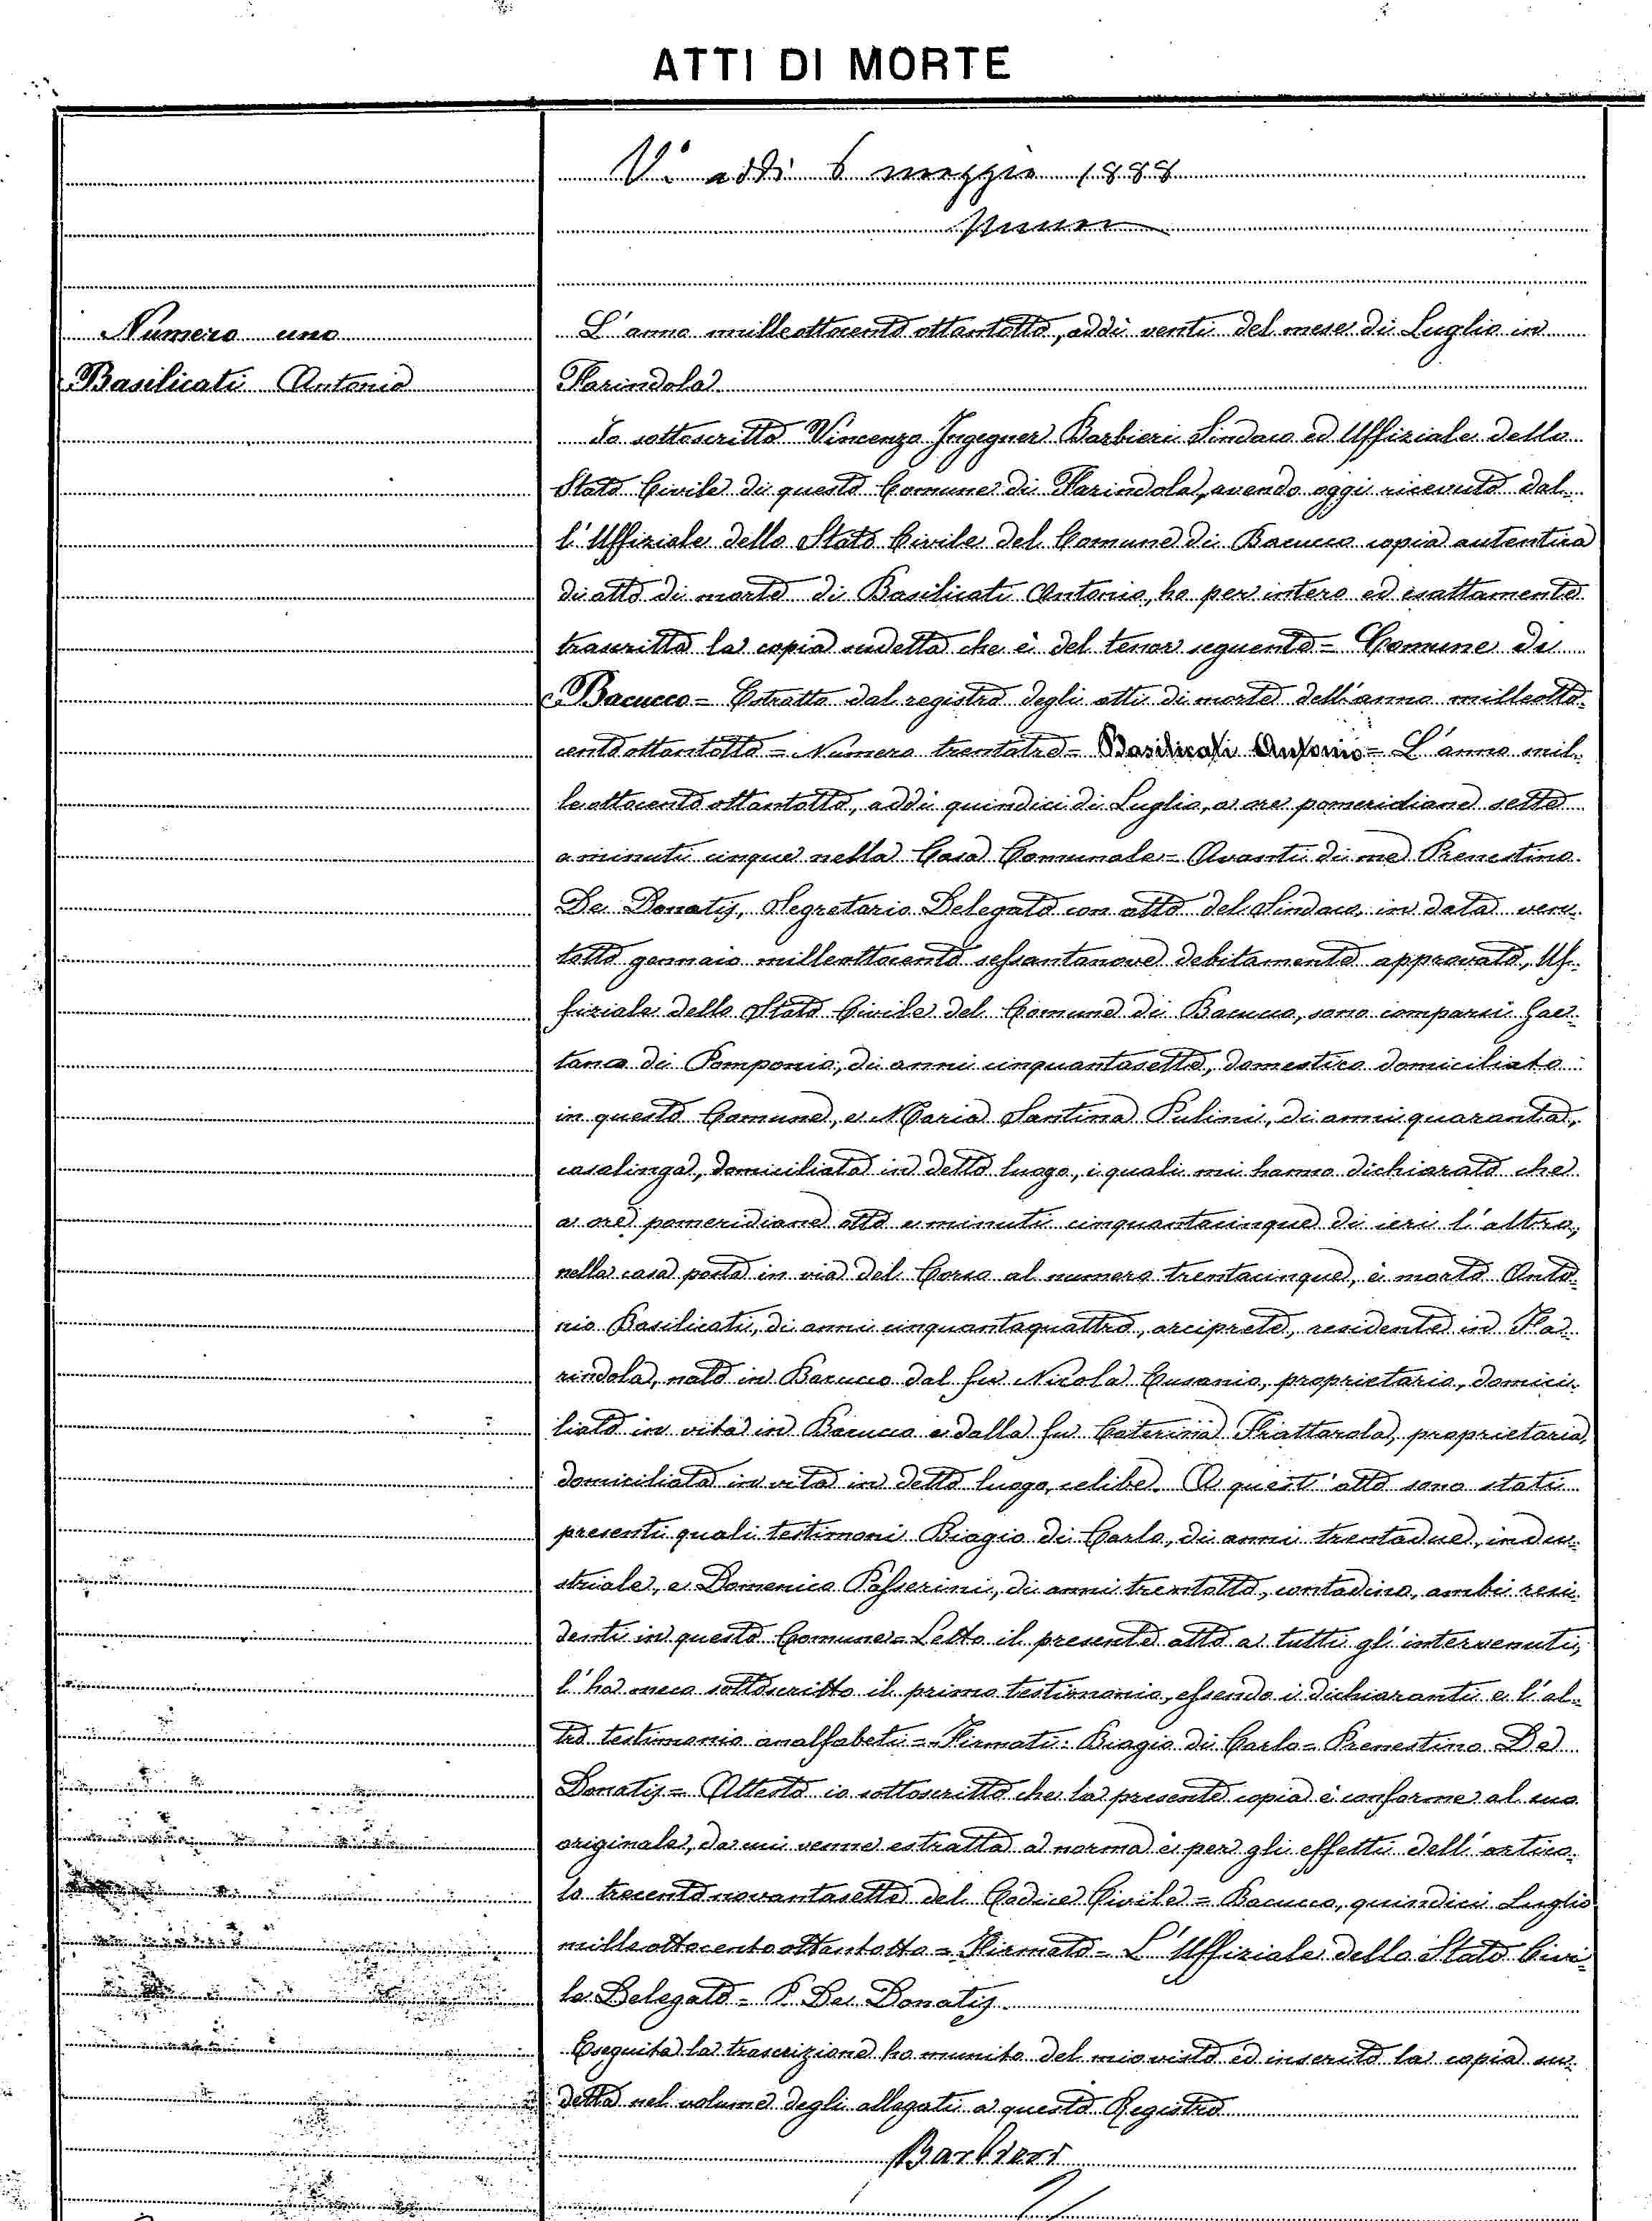 Certificato di morte: Farindola 13 luglio 1888